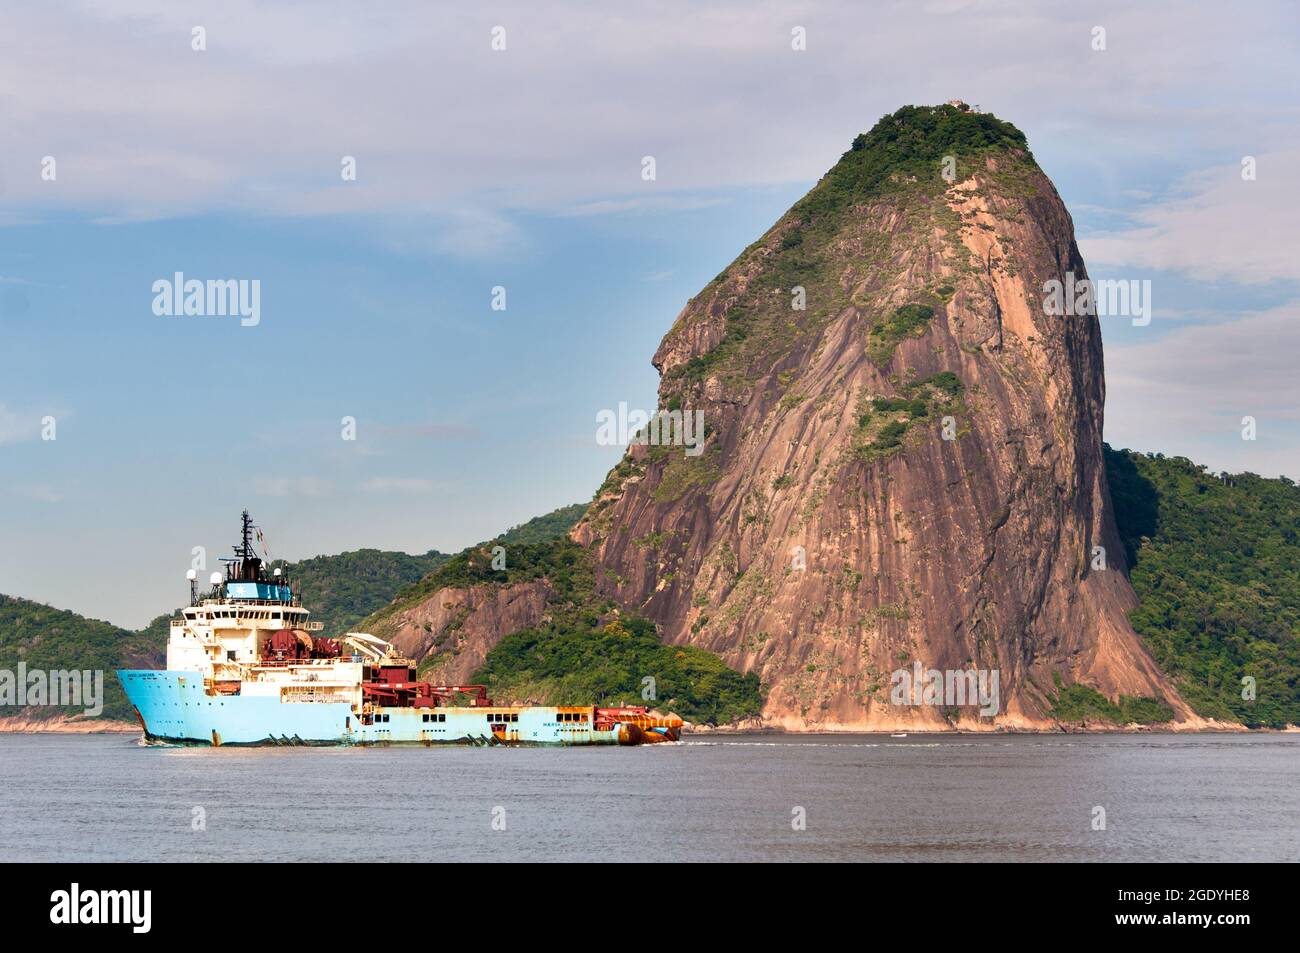 RIO, BRASILIEN - 26. FEBRUAR 2016: Maersk Launcher in der Guanabara Bucht am Zuckerhut vorbei. Launcher ist ein Anchor Handling Supply Schlepper. Stockfoto